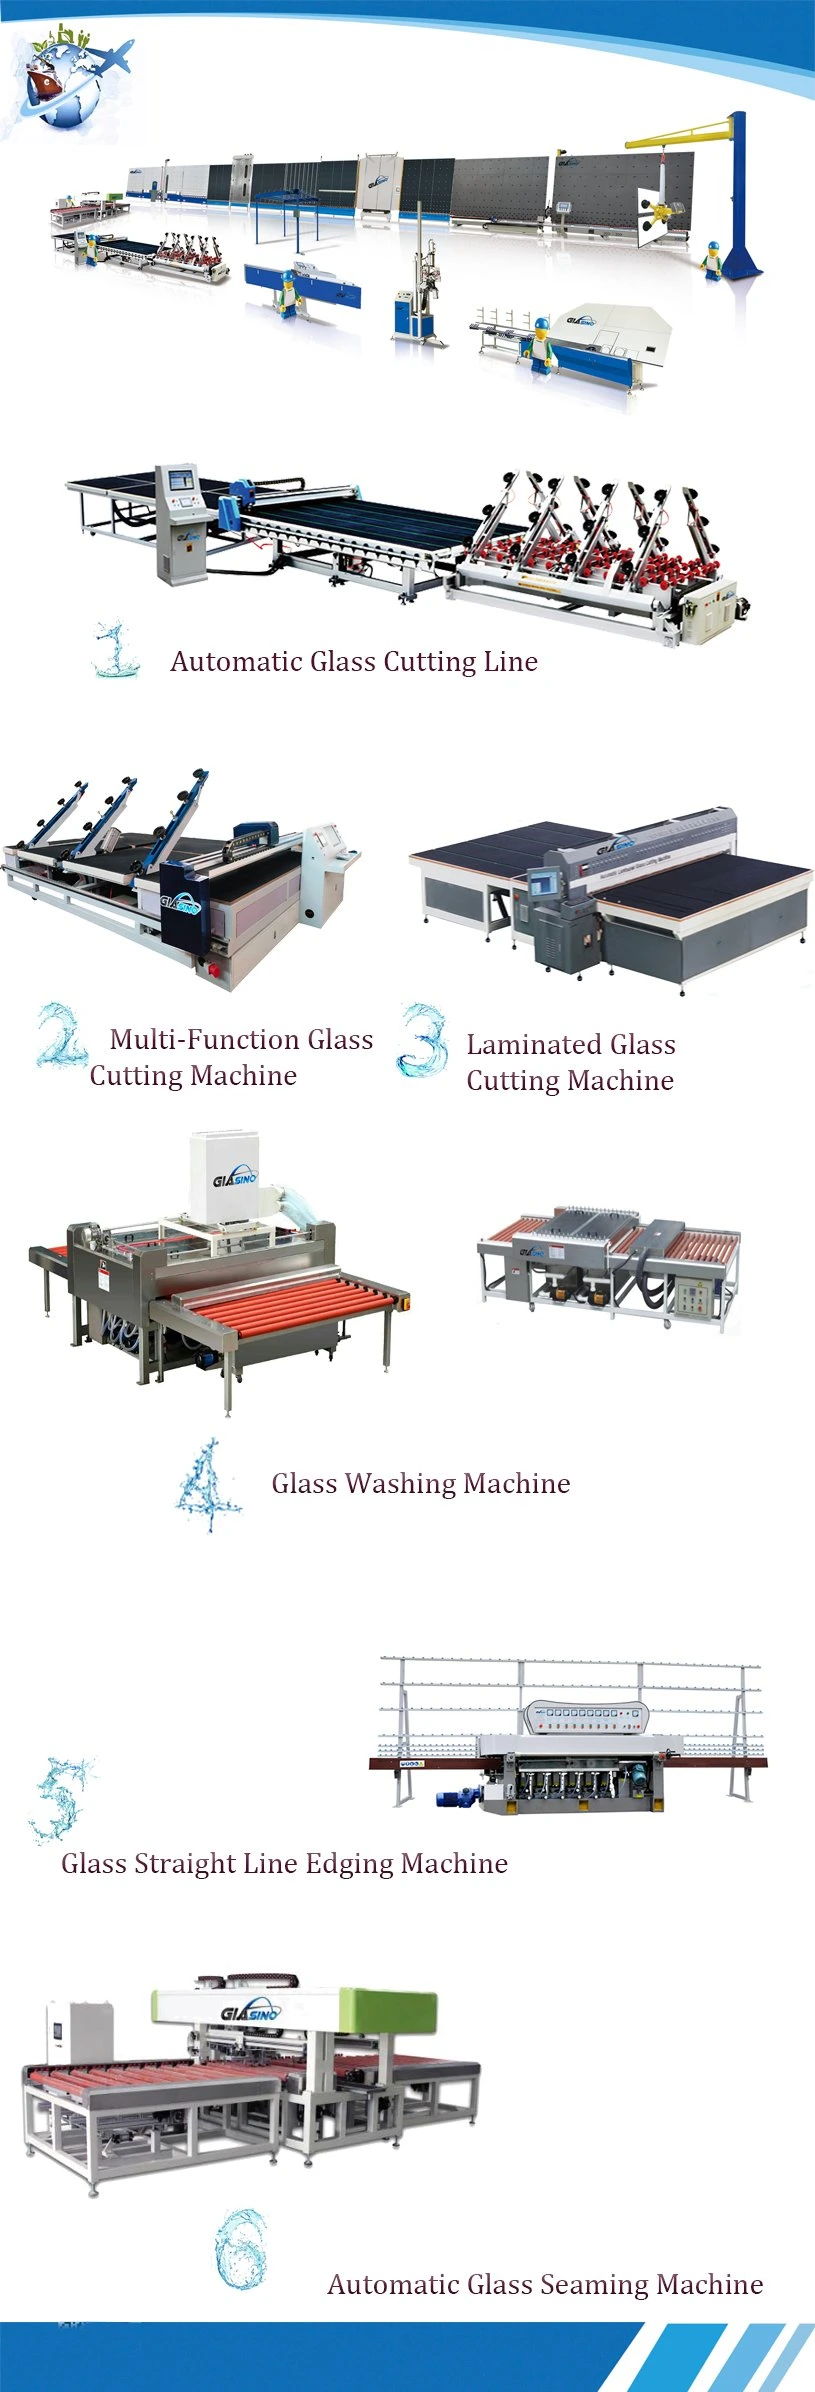 Glass Machinery - Automatic Glass Loading Machine